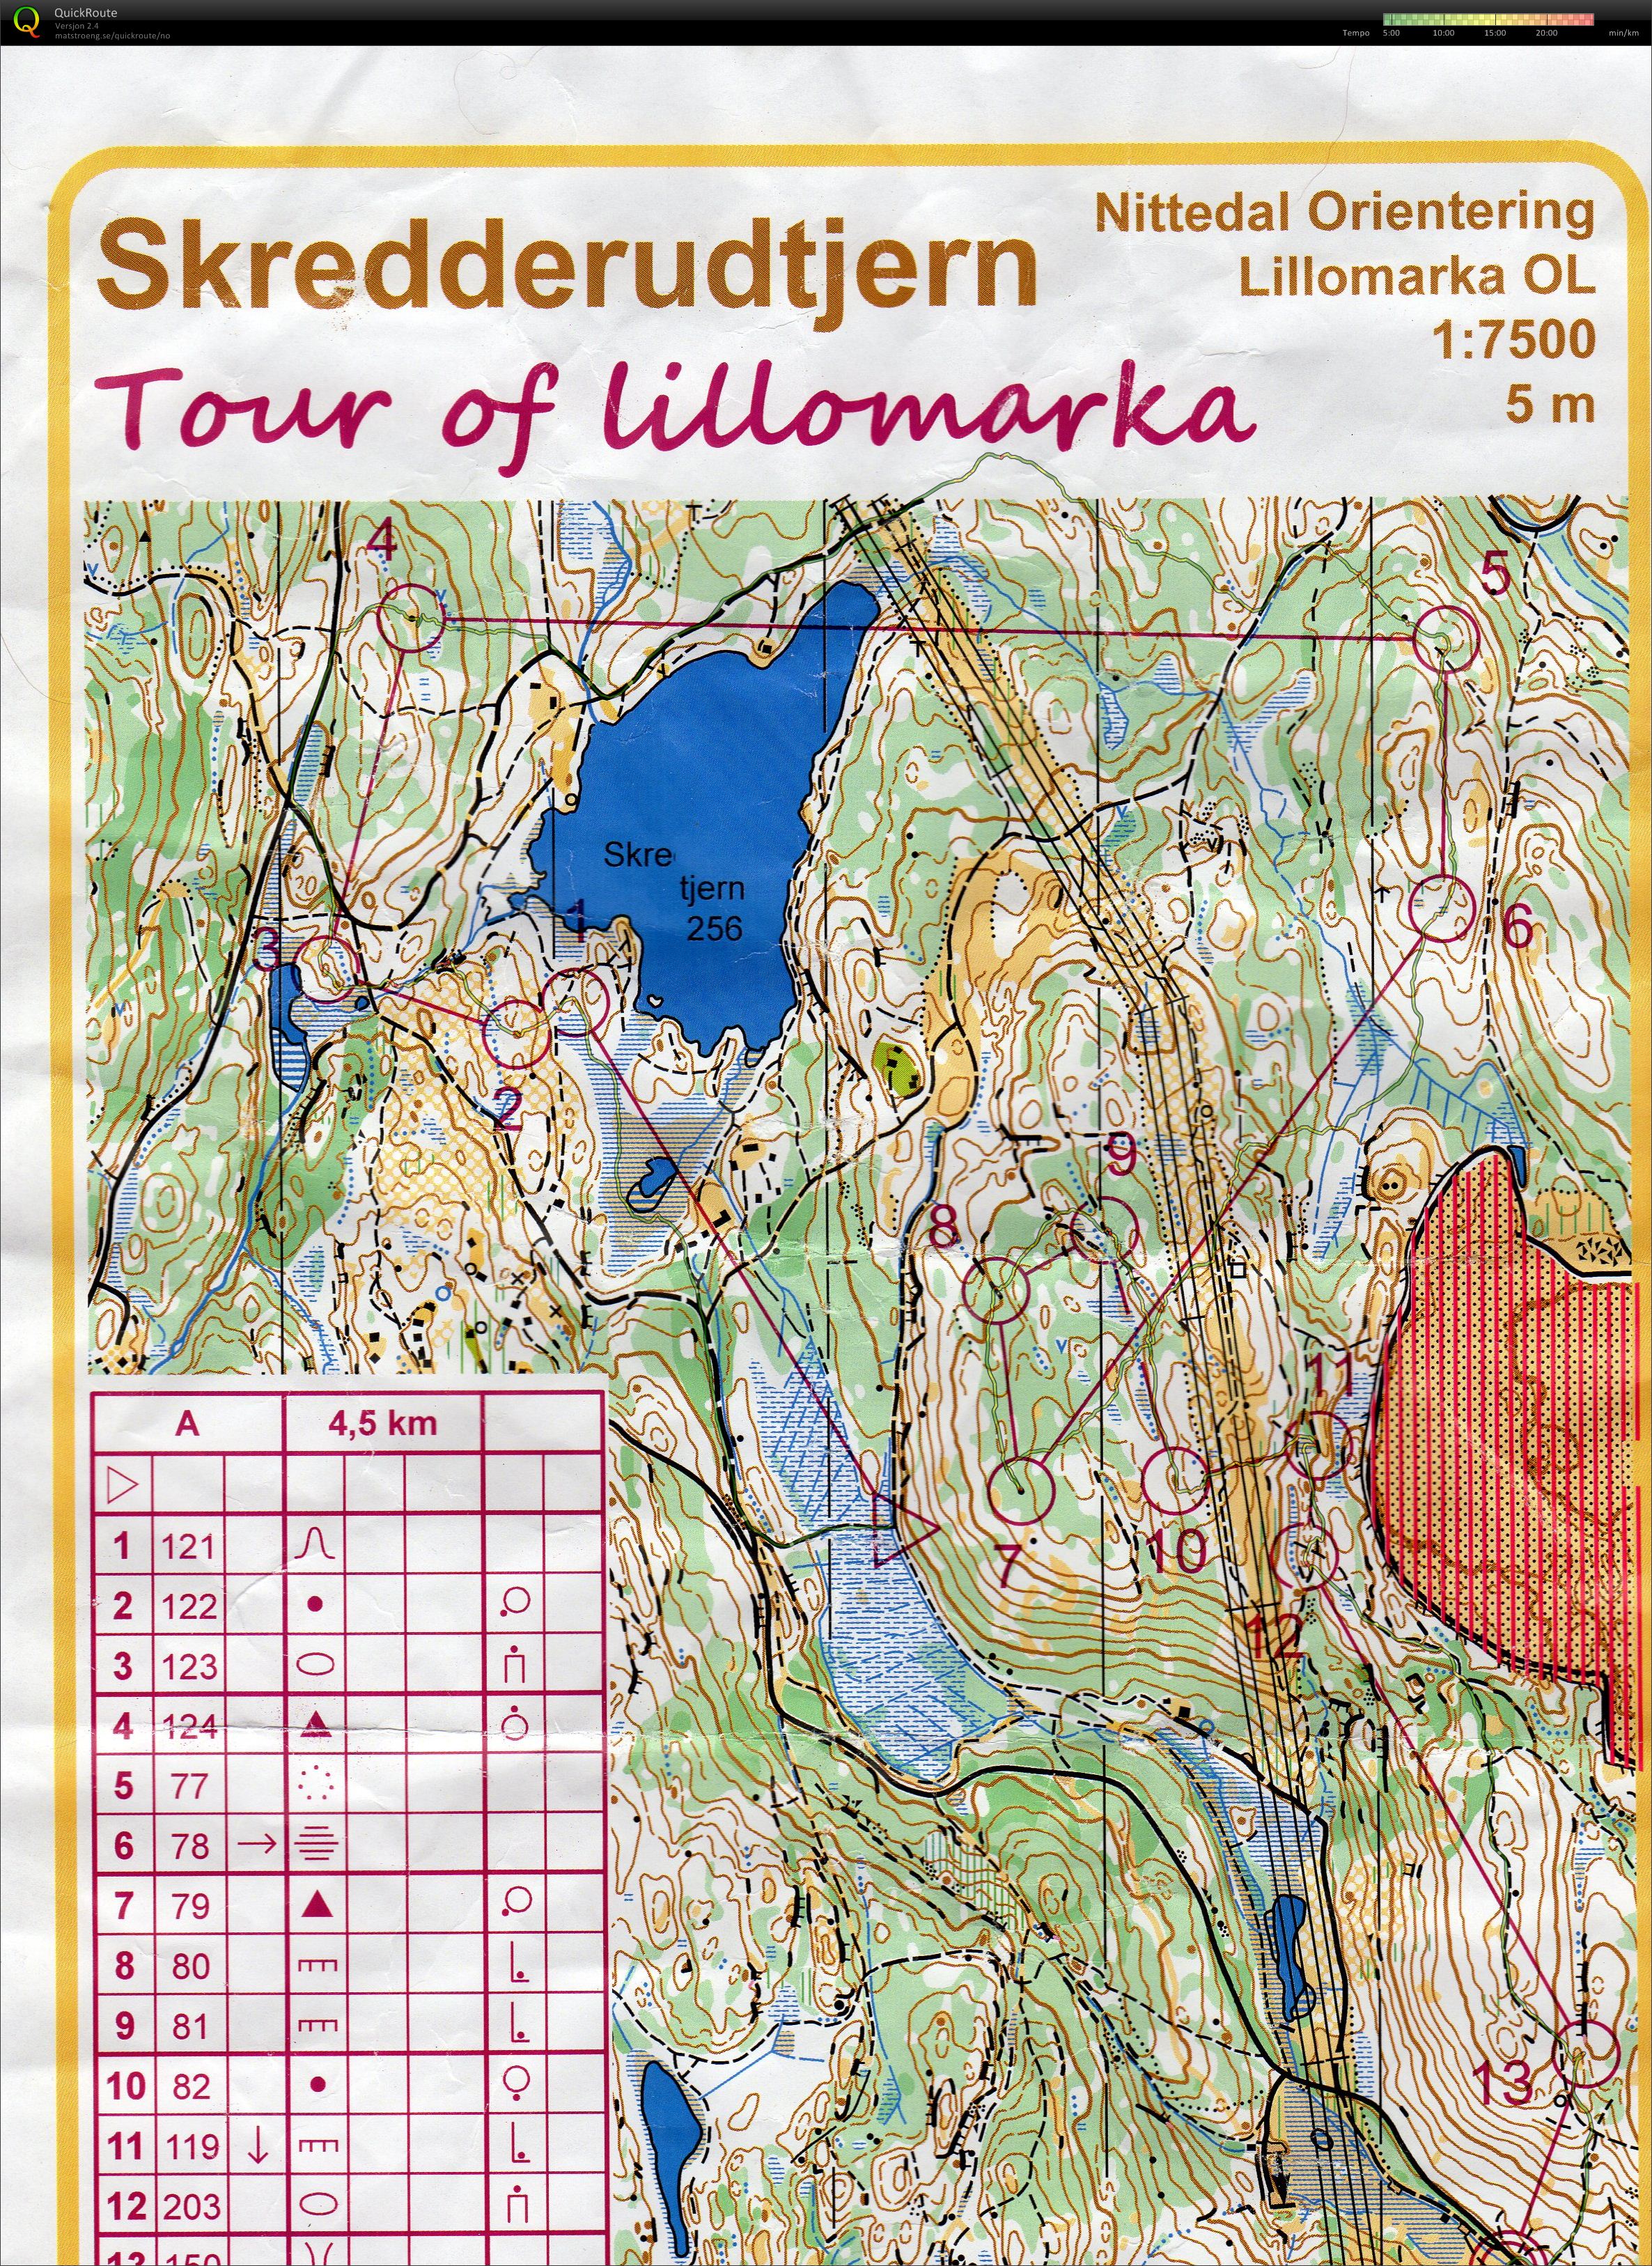 Tour of Lillomarka 7 2015 (08/06/2015)